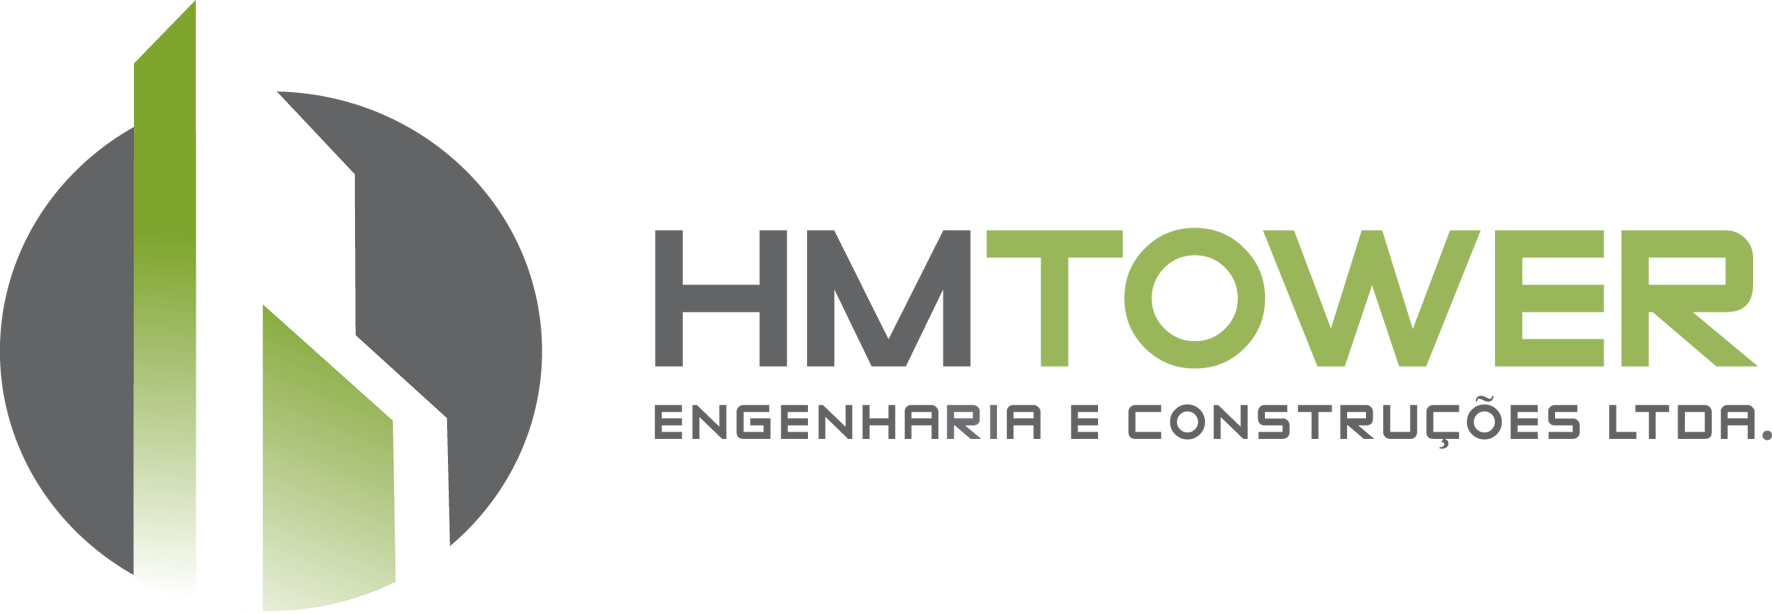 HM TOWER Engenharia e Construções LTDA